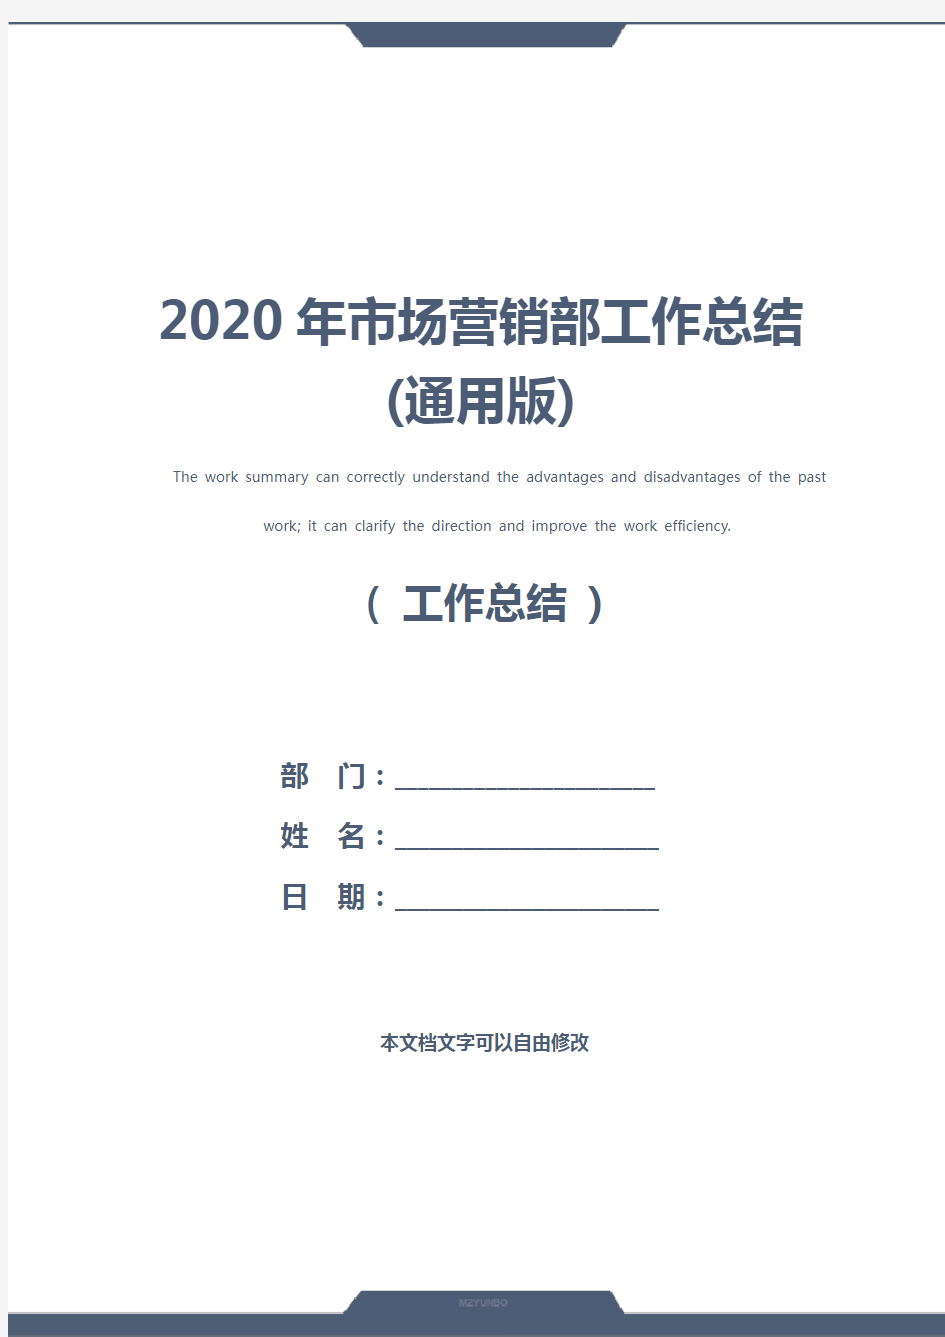 2020年市场营销部工作总结(通用版)